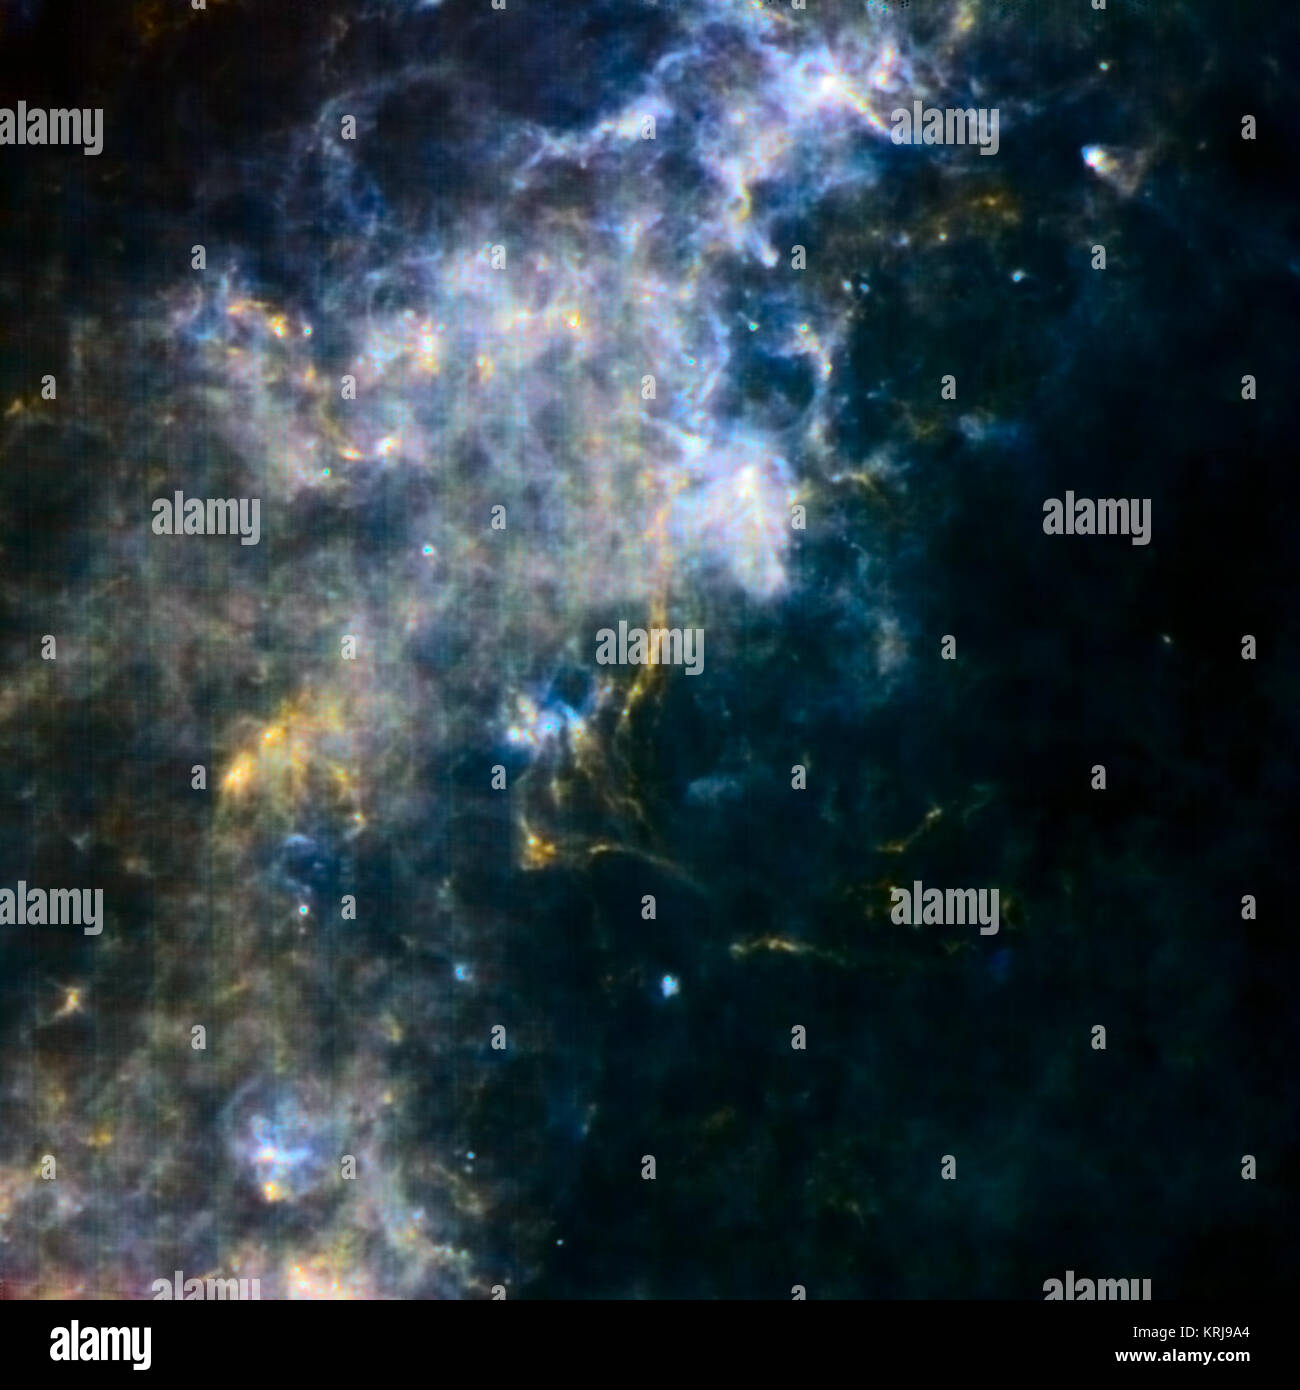 Cette image de l'Observatoire Herschel révèle certains des endroits les plus froids et les plus sombres dans notre galaxie. Le clapot nuages de gaz et de poussière que l'on voit ici ne font que commencer à se condenser en de nouvelles étoiles. Les filaments jaunes montrent la poussière la plus froide parsemée d'étoiles embryonnaires les plus jeunes. Infrarouge, ou sub-millimétrique, la lumière avec une longueur d'onde de 250 microns est représenté en bleu, 350 microns en lumière verte ; et 500 microns en lumière rouge. La plus grande partie de cette région de notre galaxie serait caché dans une vue en lumière visible. La région est représentée dans le plan de notre galaxie, la Voie Lactée, 60 degrés à partir du centre. Il sp Banque D'Images